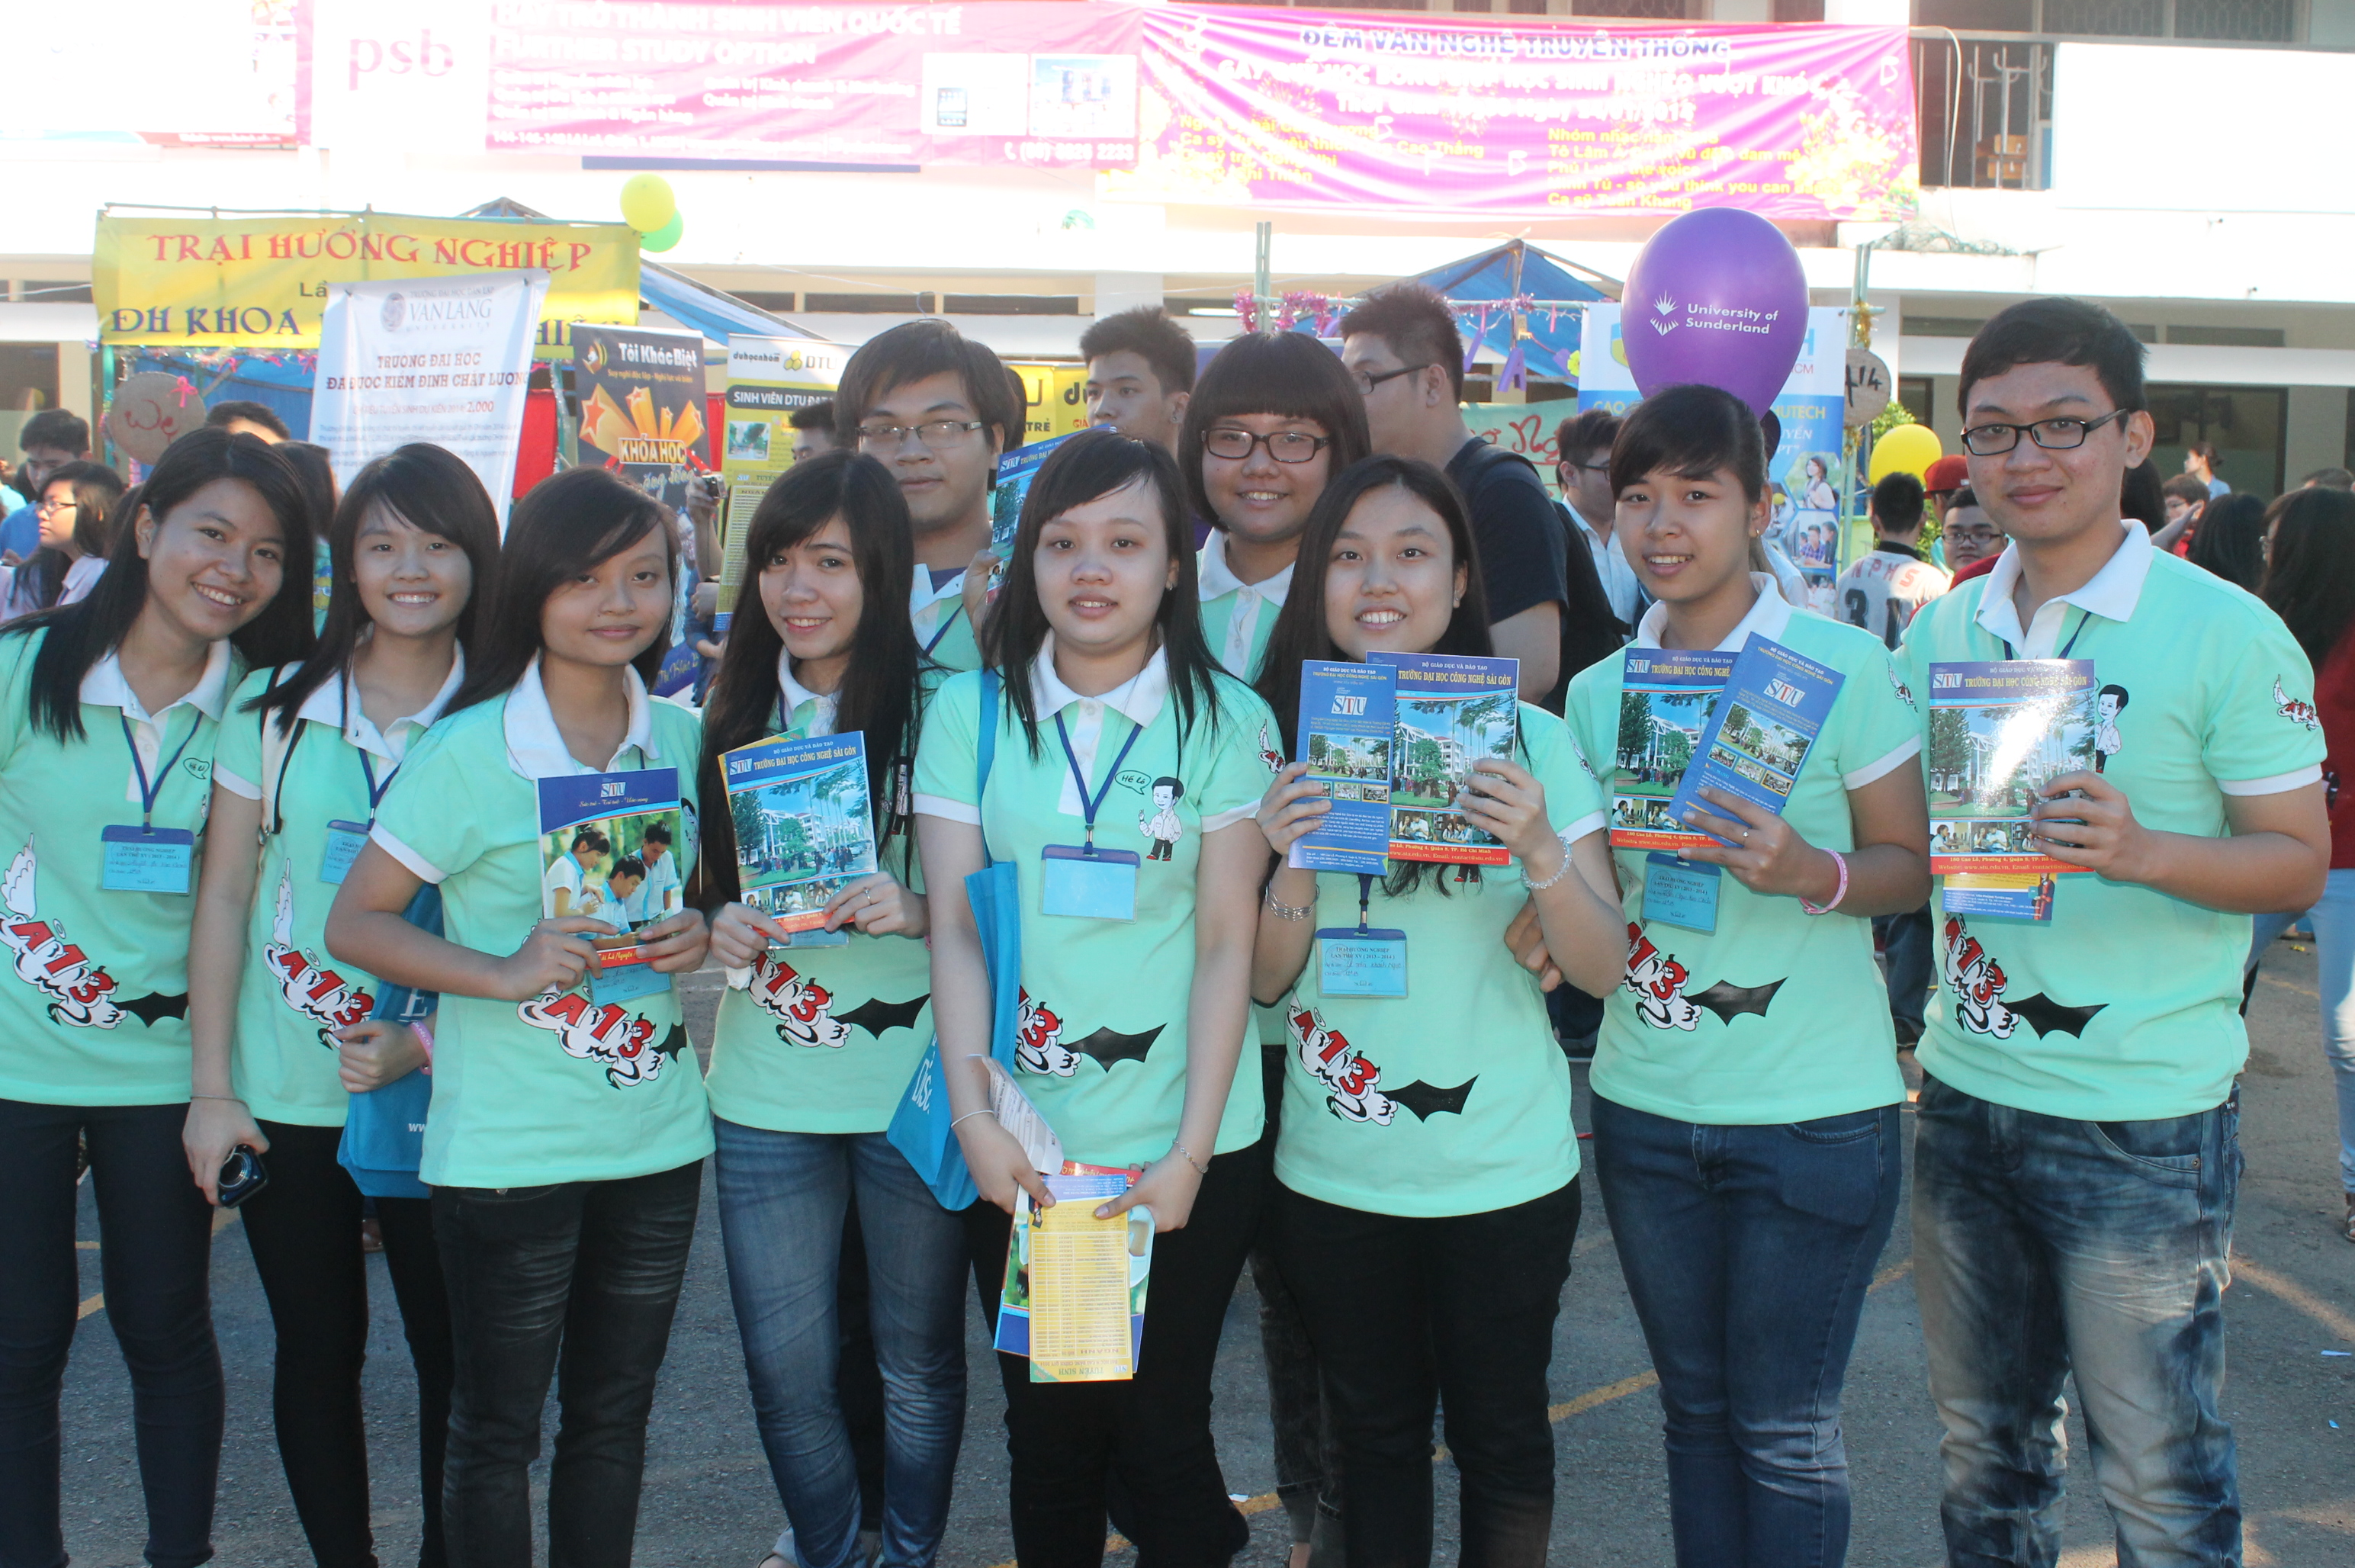 STU tham gia chương trình tư vấn hướng nghiệp 2014 tại Trường THPT Nguyễn An Ninh